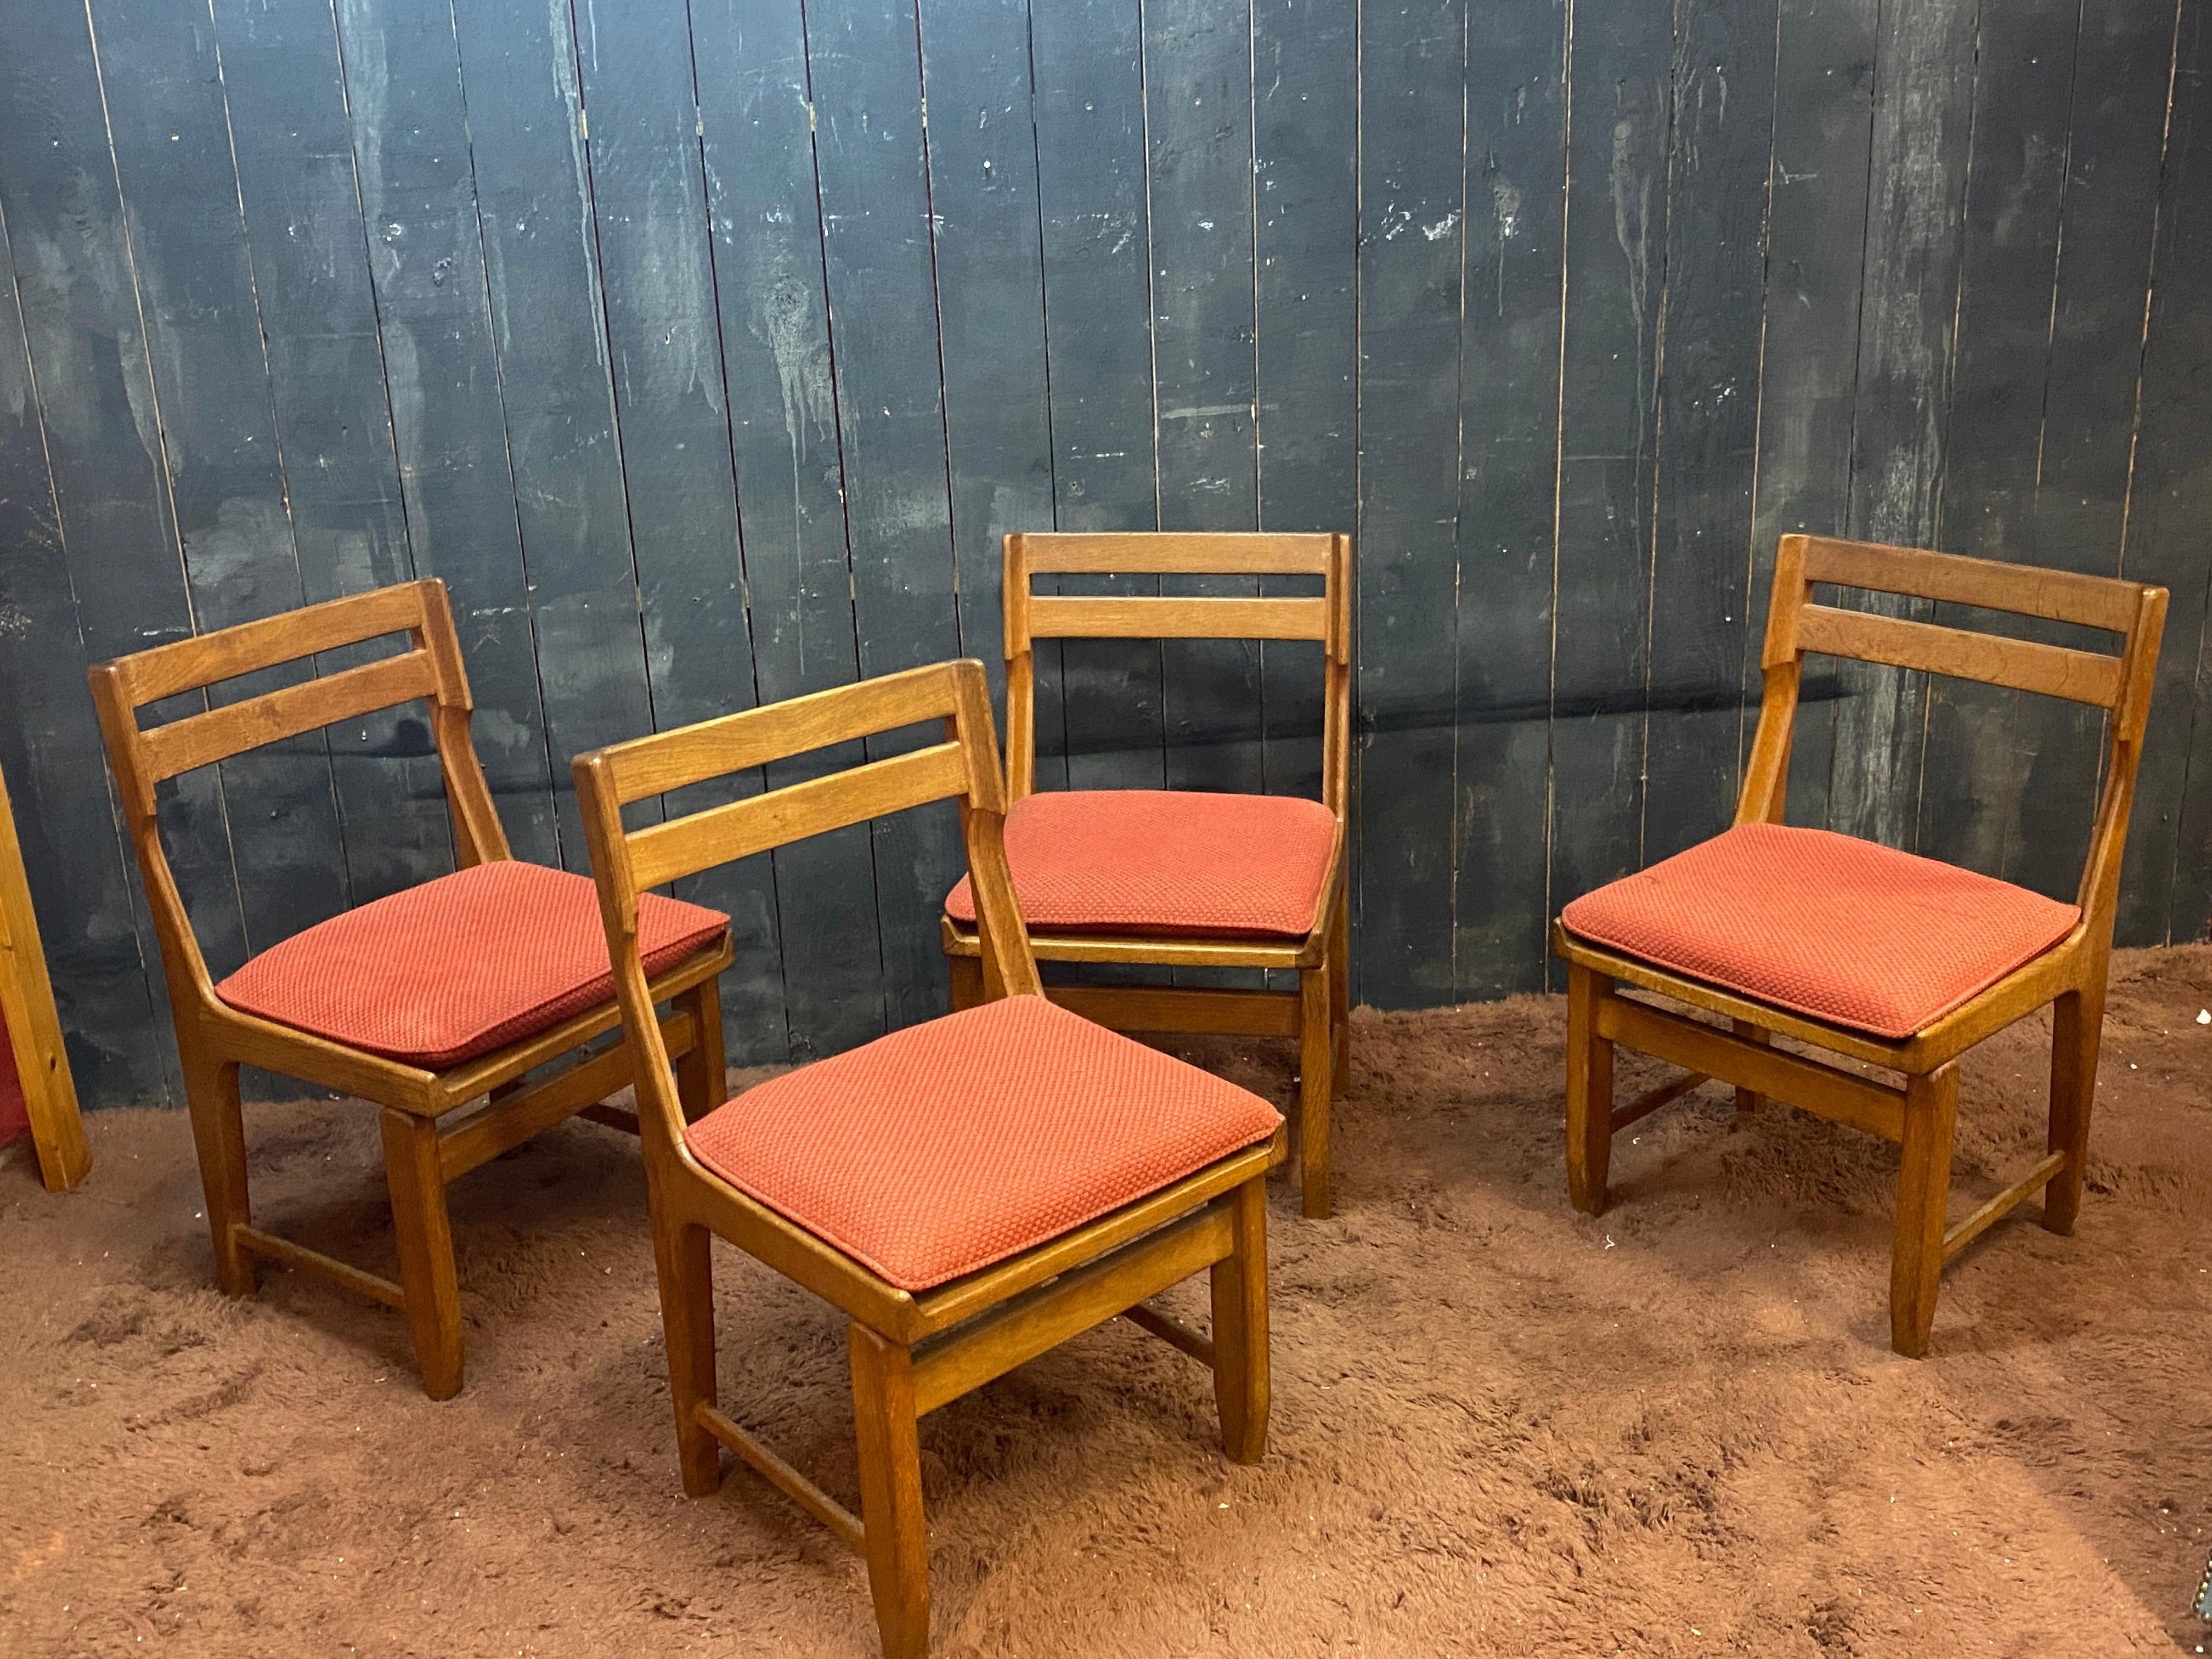 Guillerme et Chambron SET OF 4 chairs Edition Votre Maison, circa 1970.
Les bois sont en bon état.
tissu délavé

possibilité d'avoir 12 chaises au total, patine et tissu différent